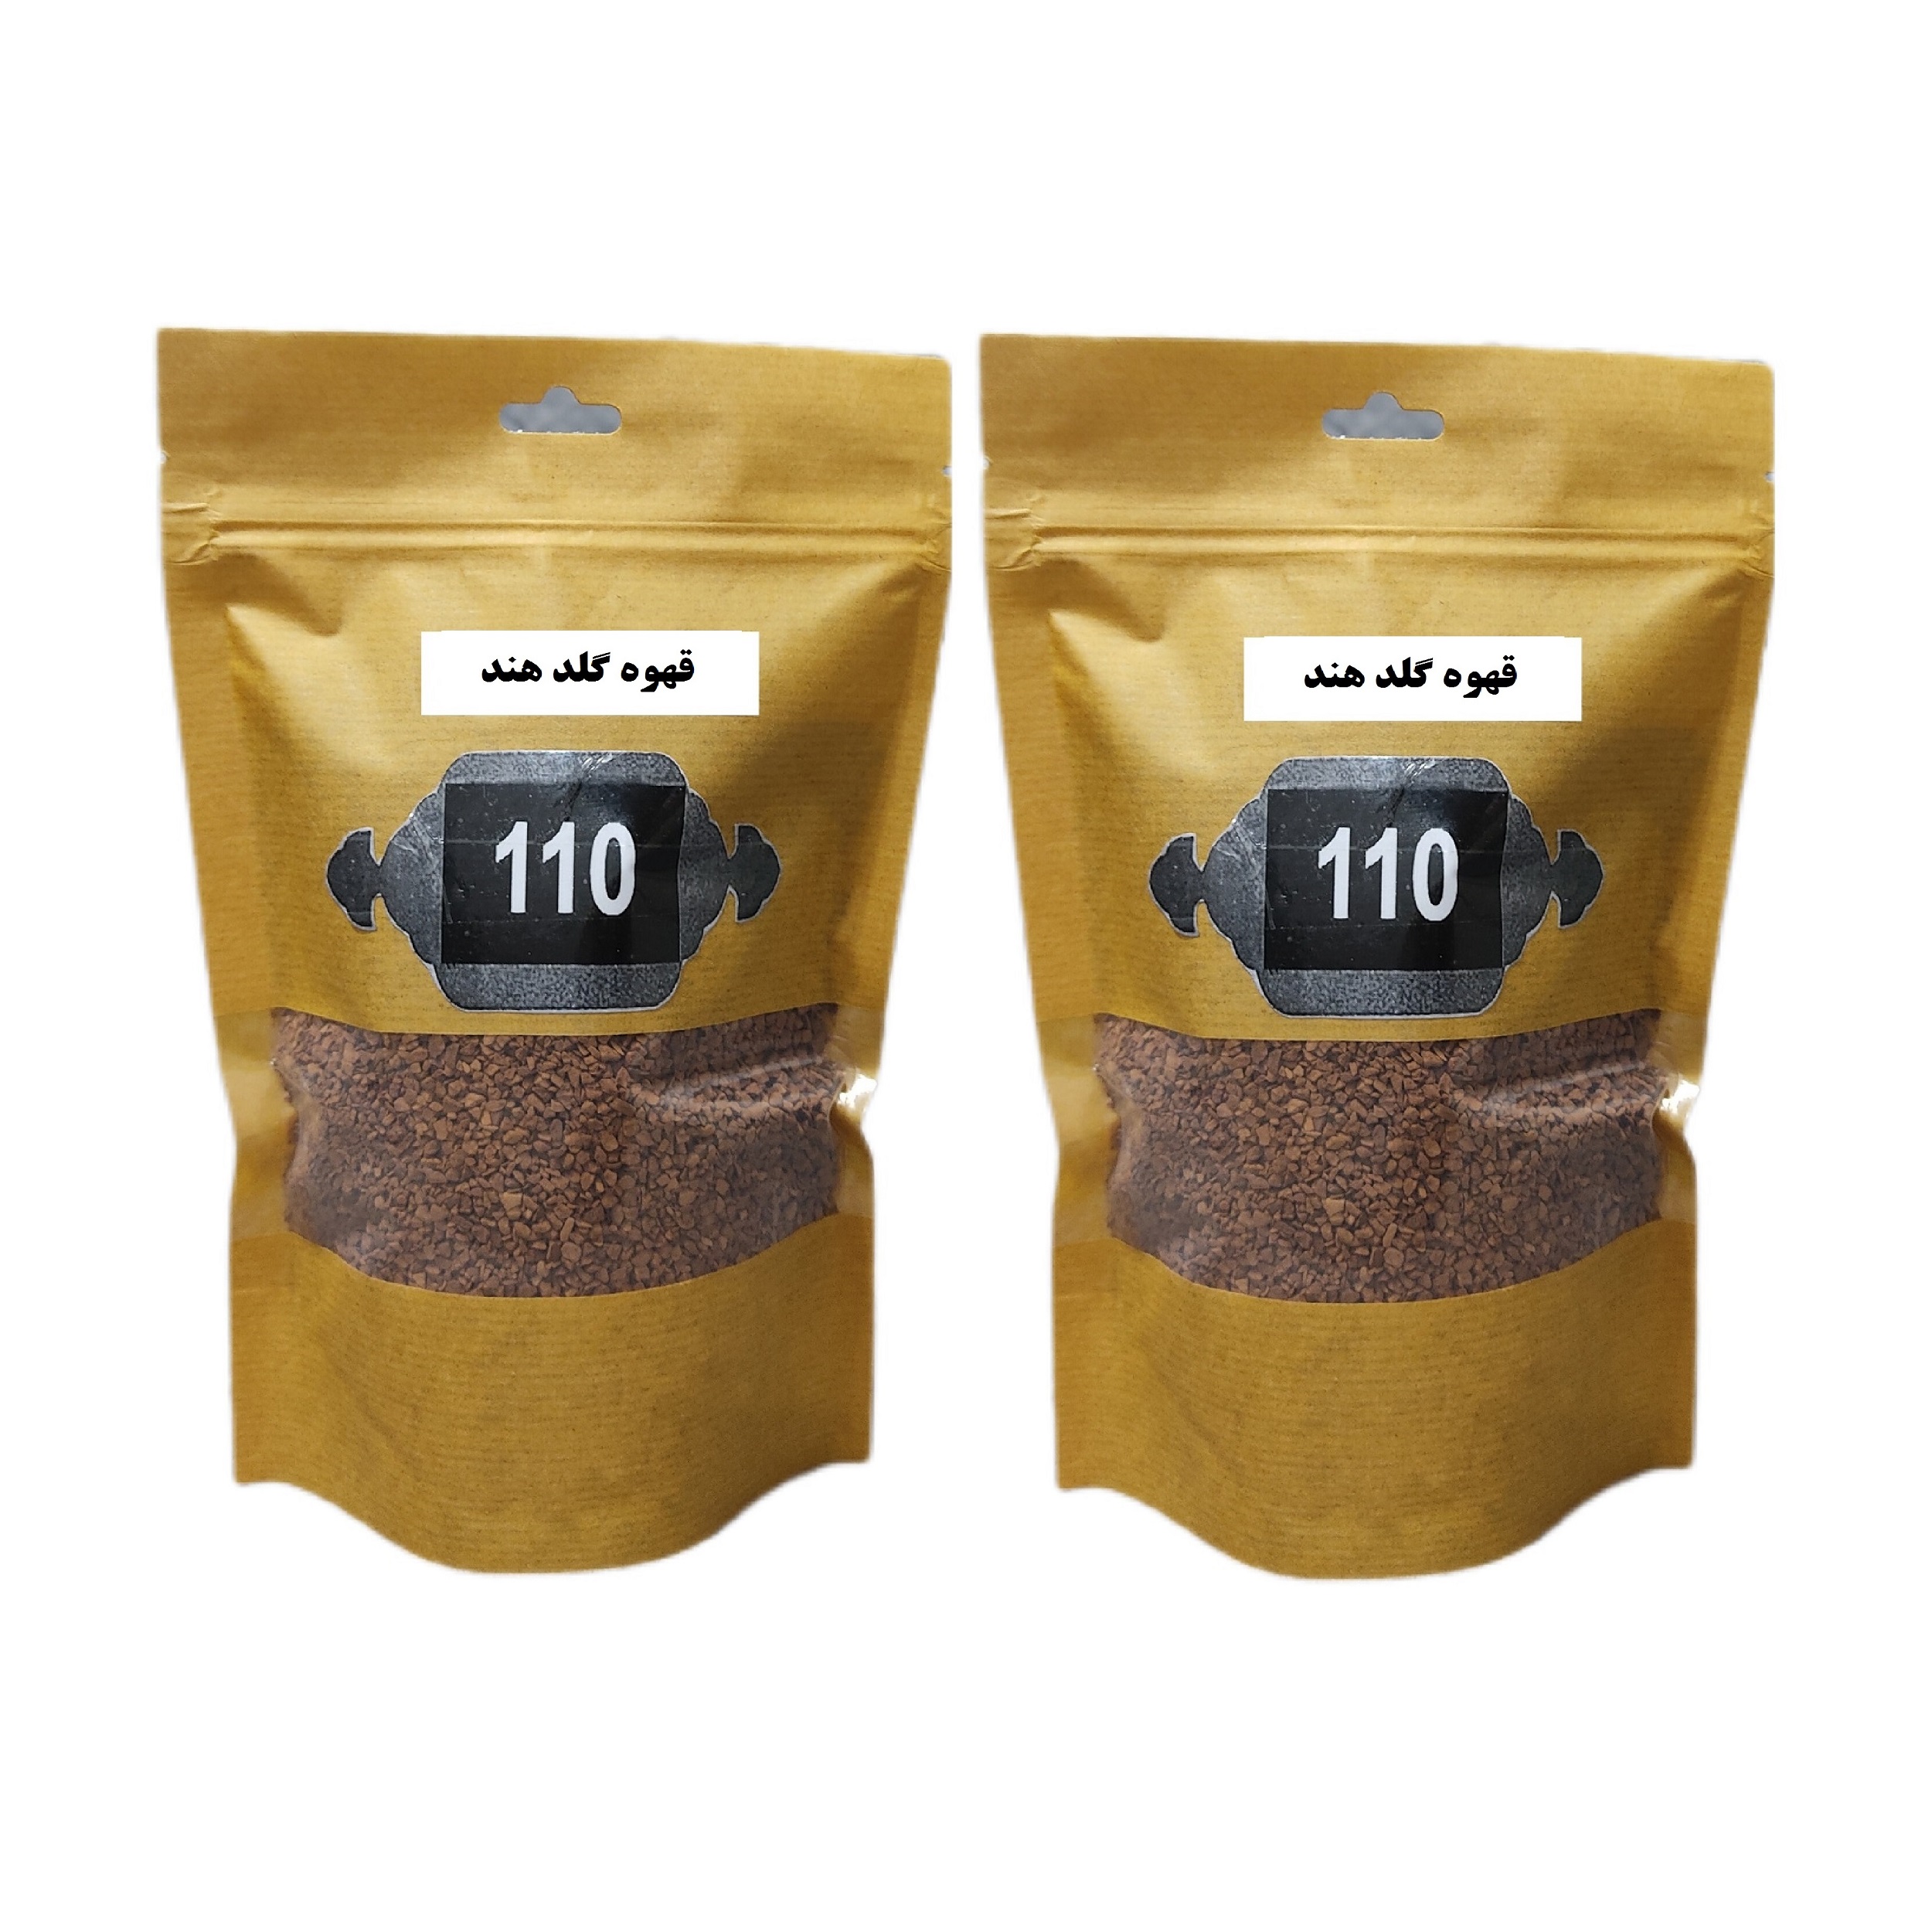 قهوه گلد هند 110 -100 گرم بسته 2 عددی